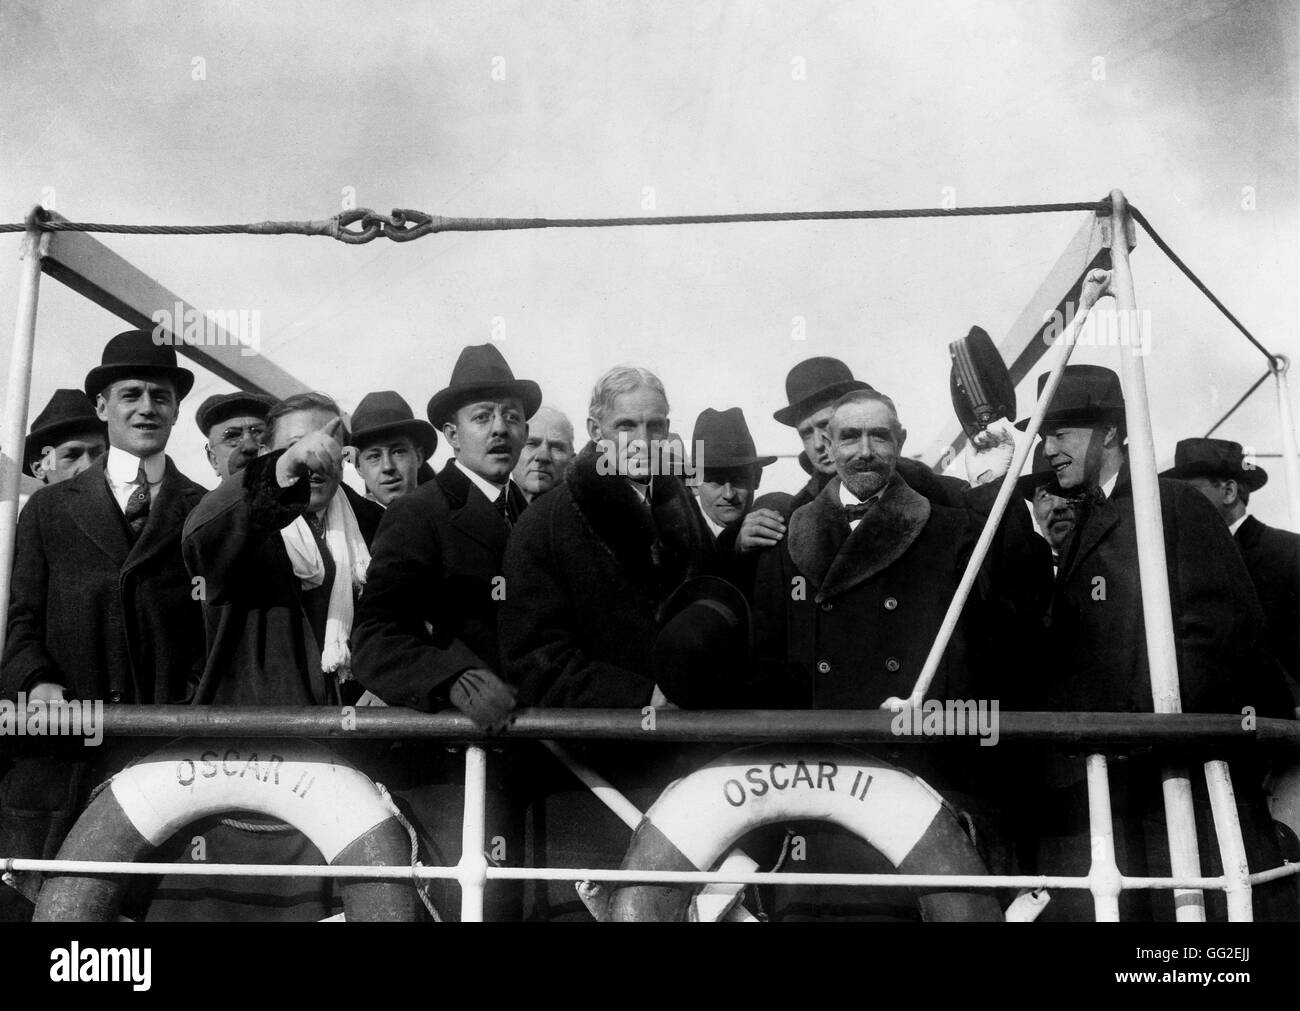 Die Ford-Frieden-Expedition: Henry Ford mit Mitgliedern der Frieden Partei gehen nach Europa an Bord des Schiffes "Oscar II" Februar 1918 USA, Weltkrieg Washington, National archives Stockfoto